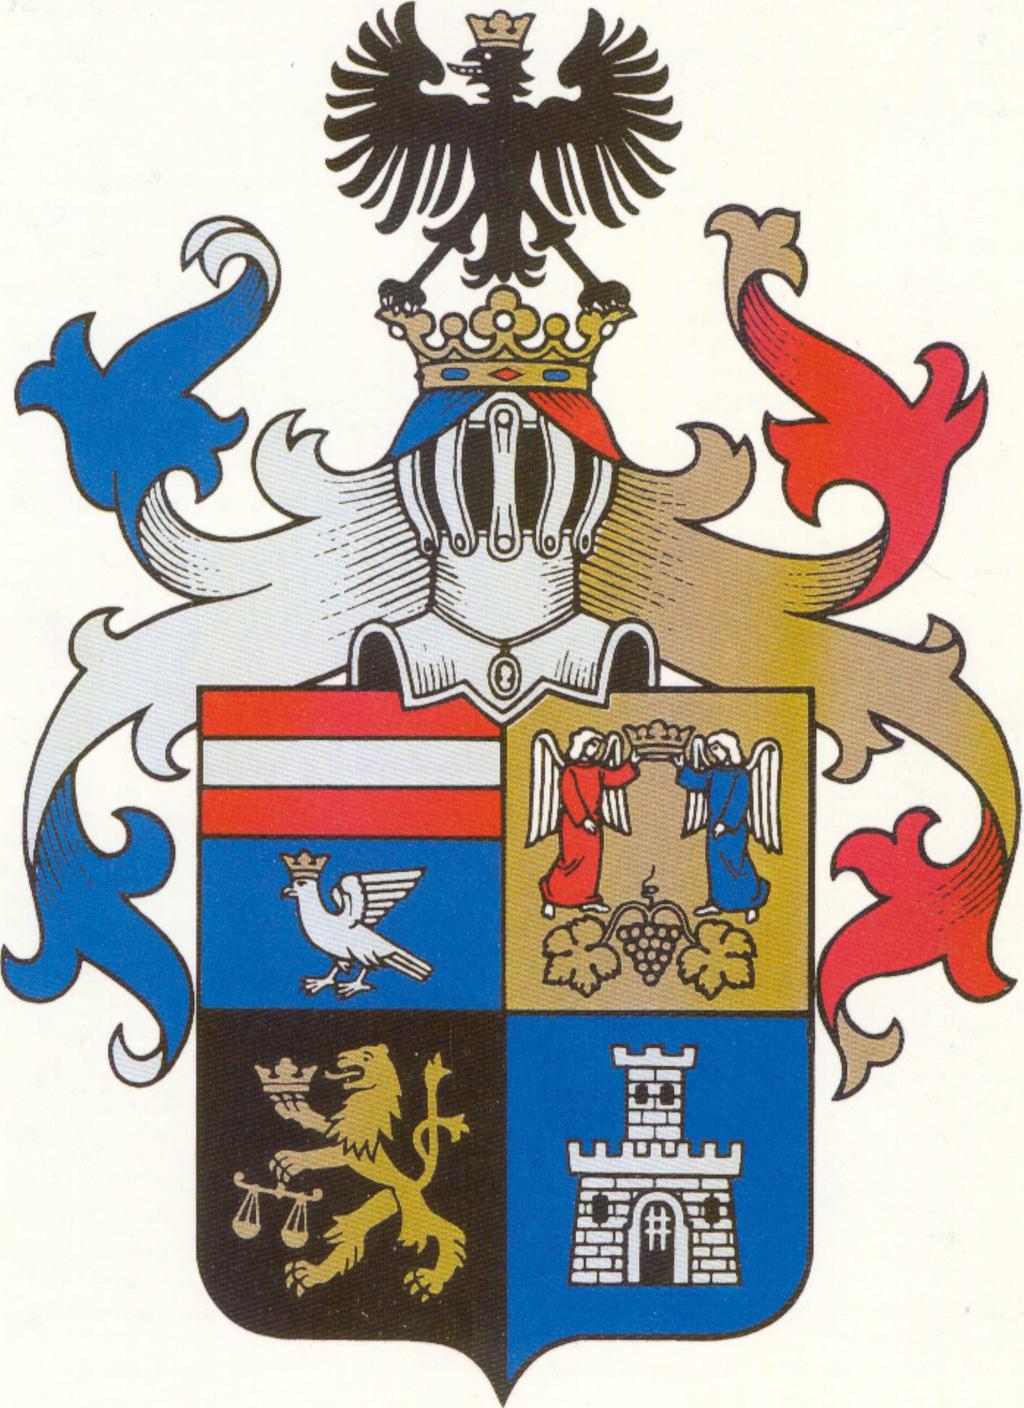 Borsod-Abaúj-Zemplén Megyei Önkormányzat